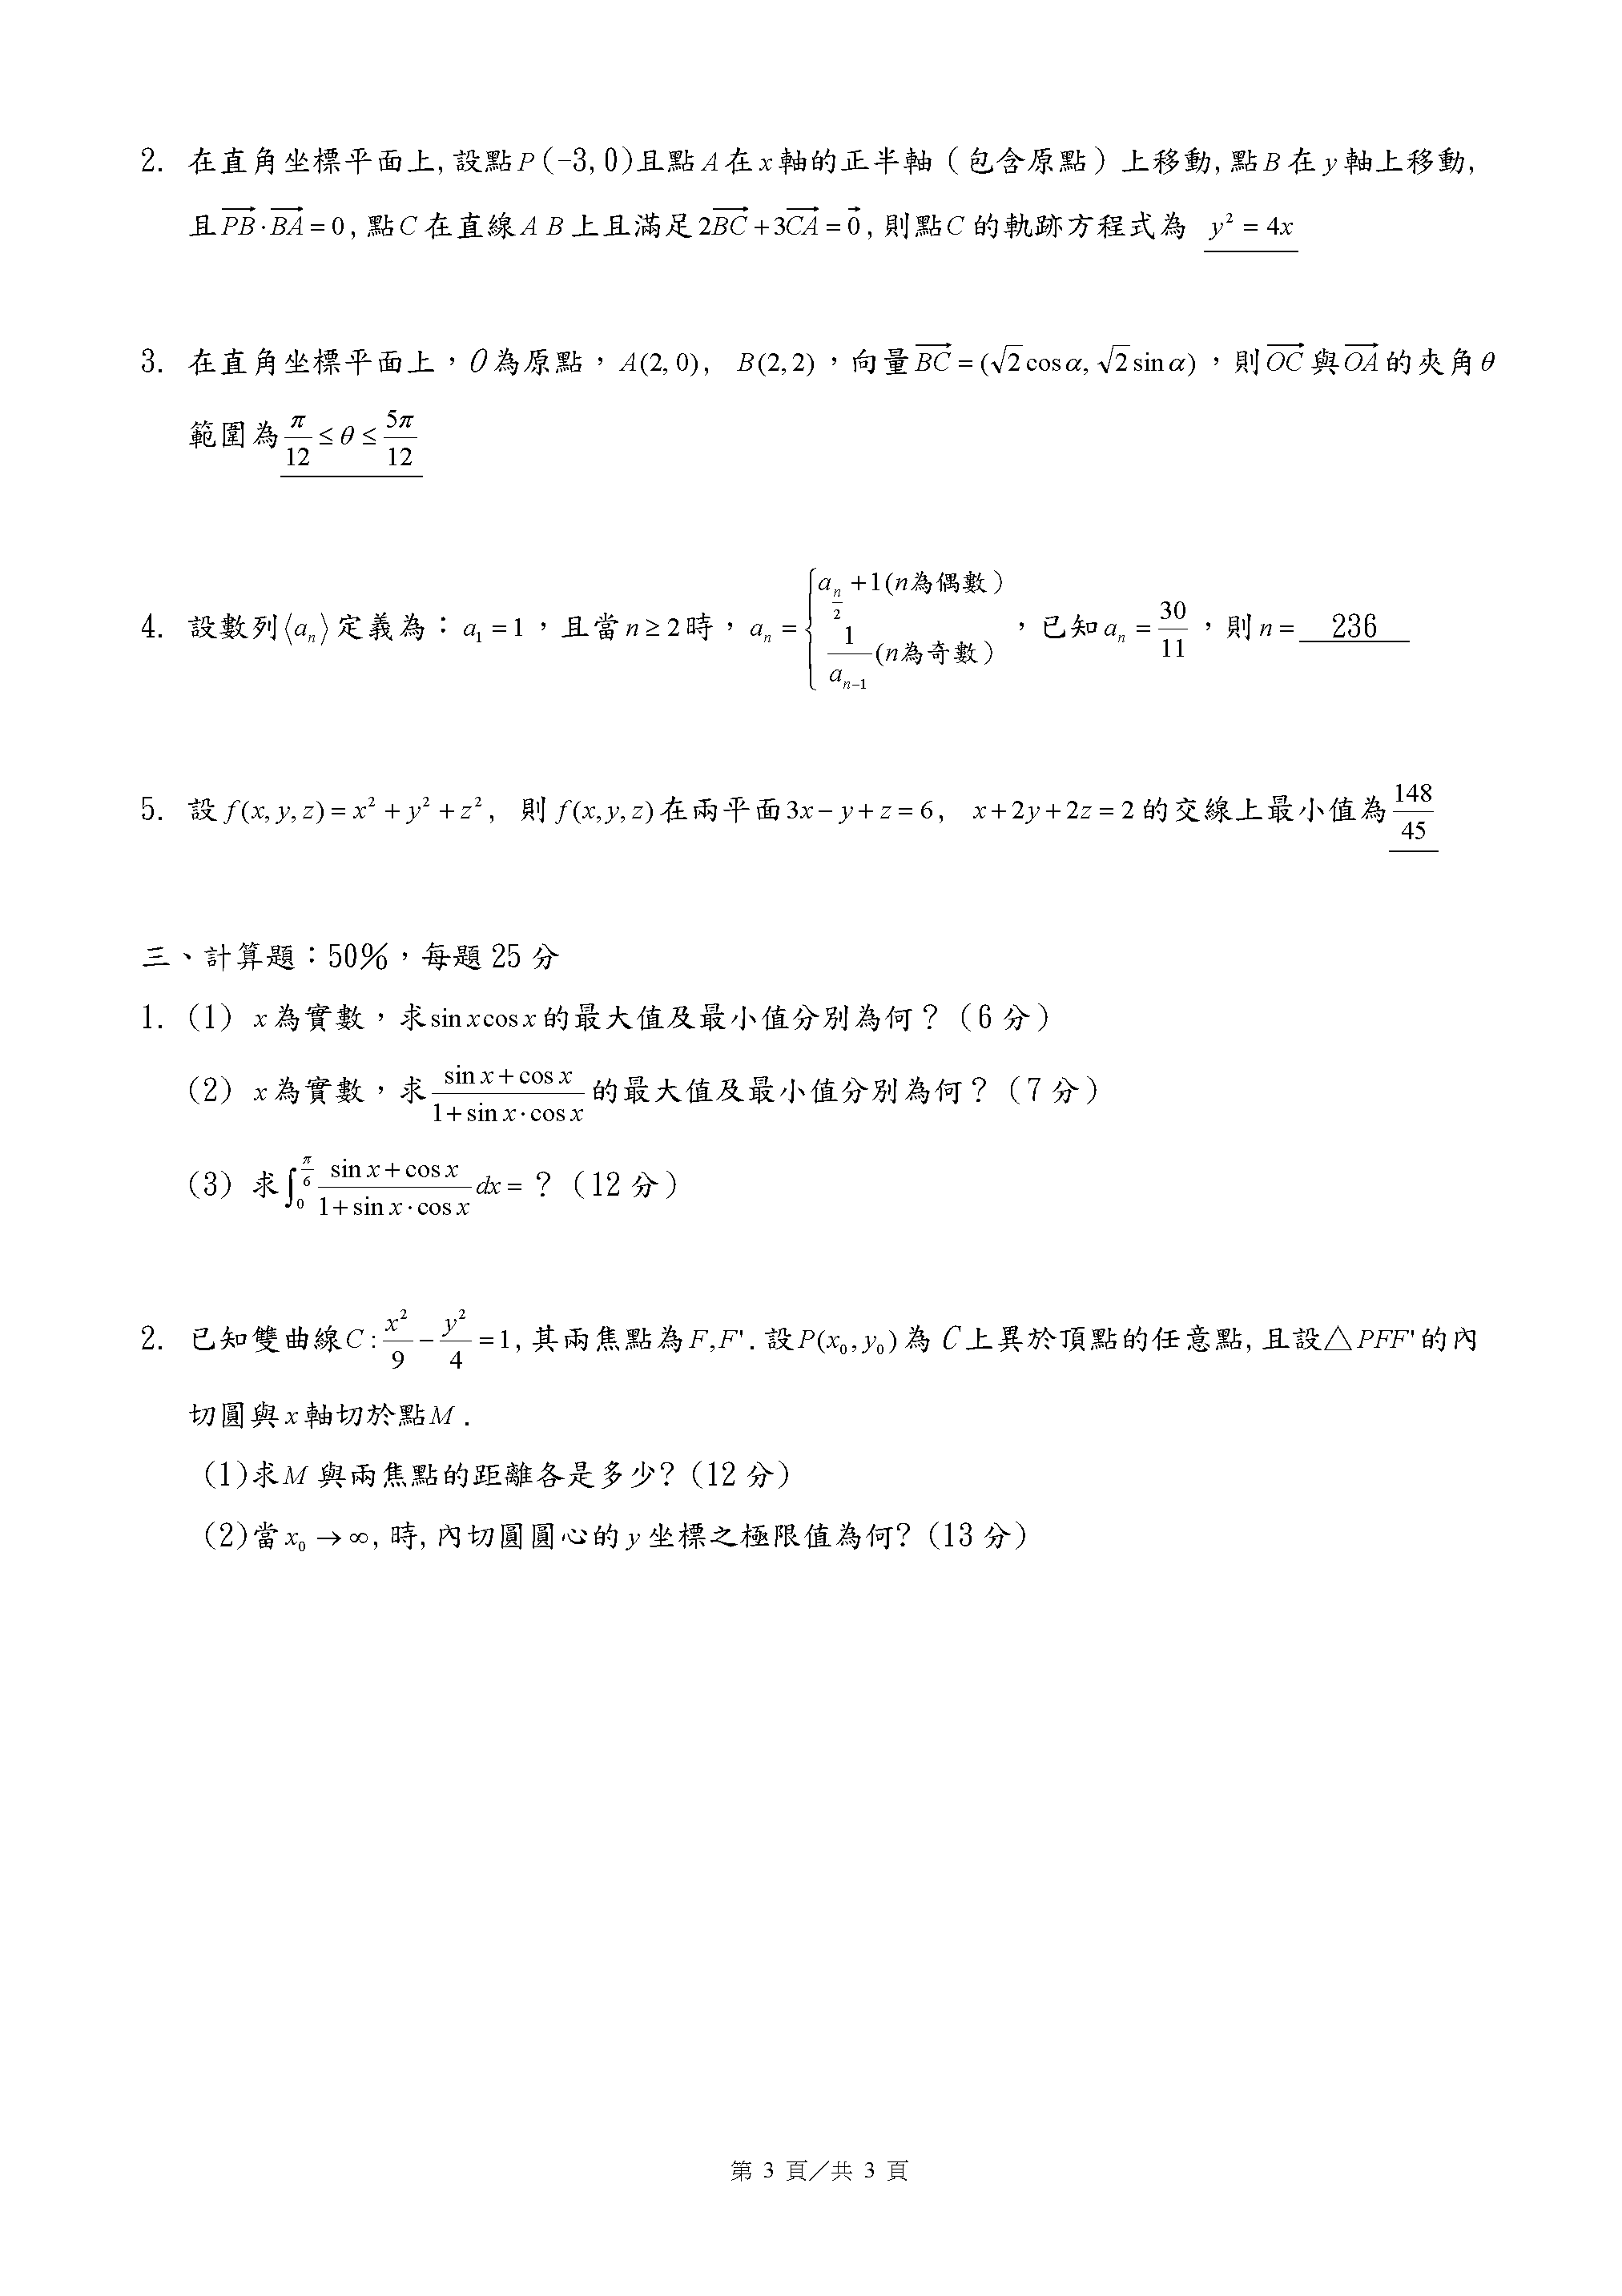 數學科答案_頁面_3.png